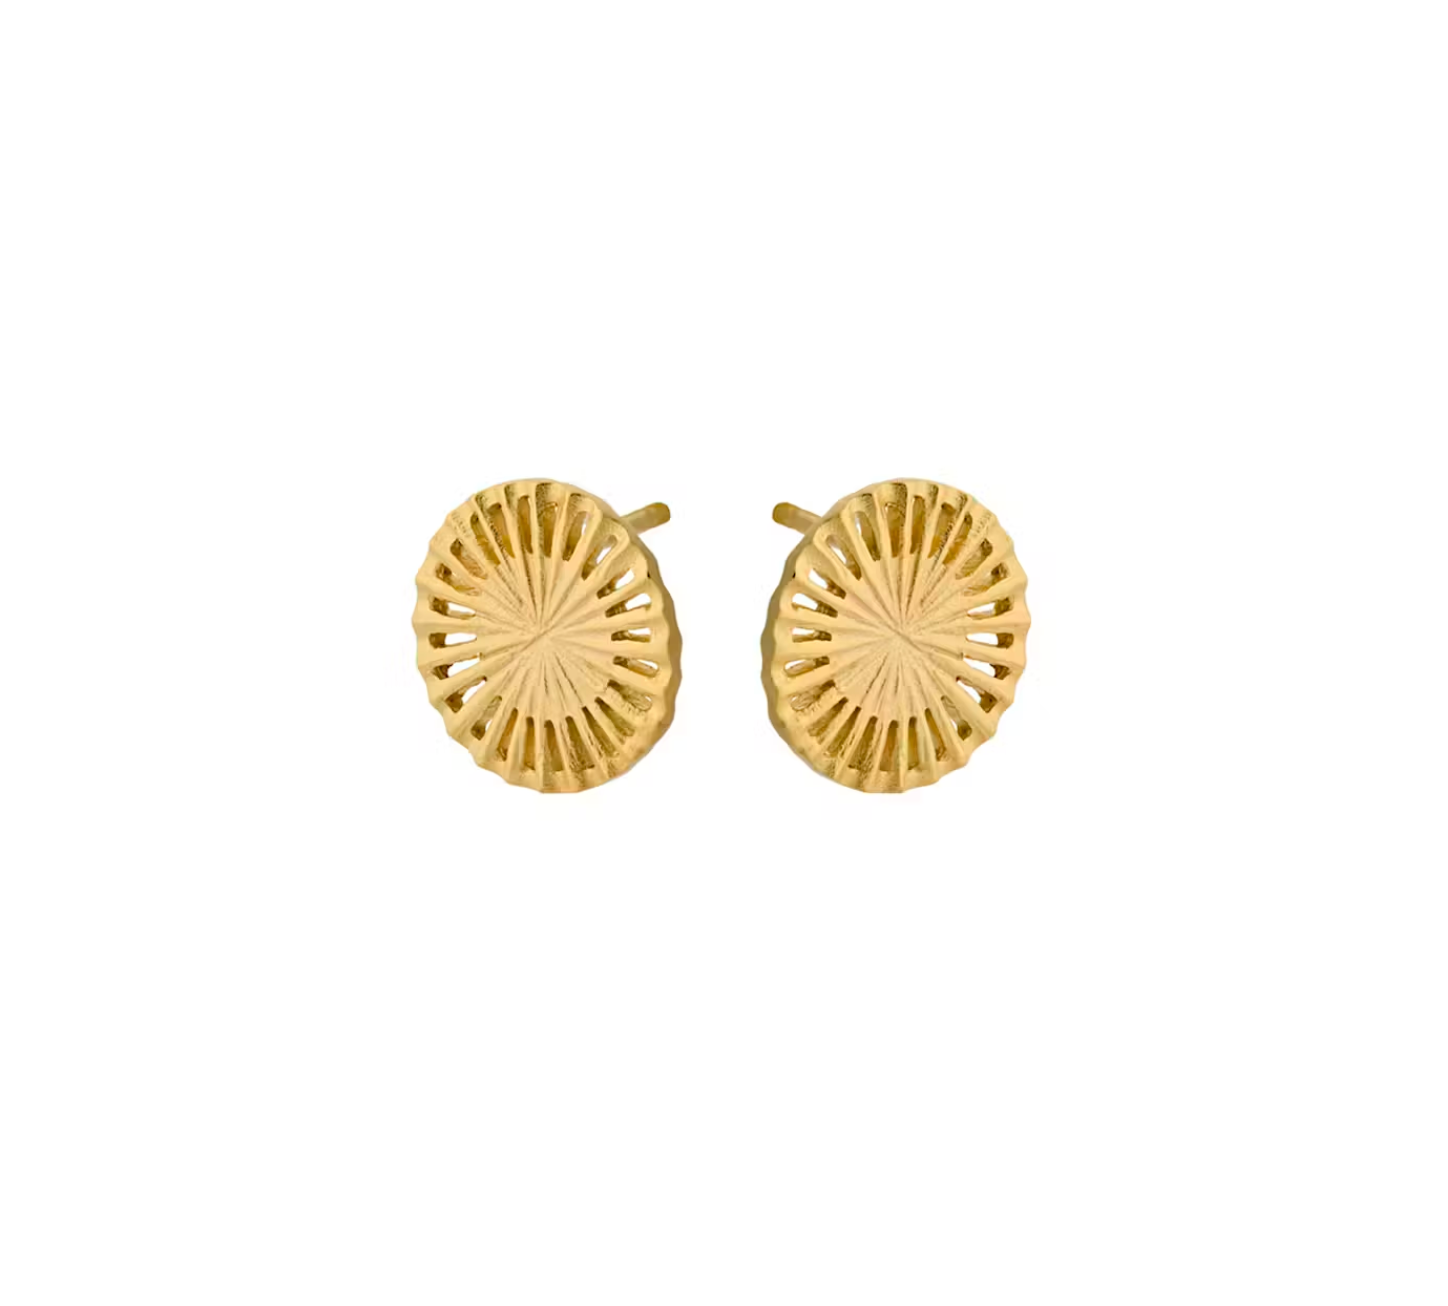 Starlight Earsticks Earrings in Gold